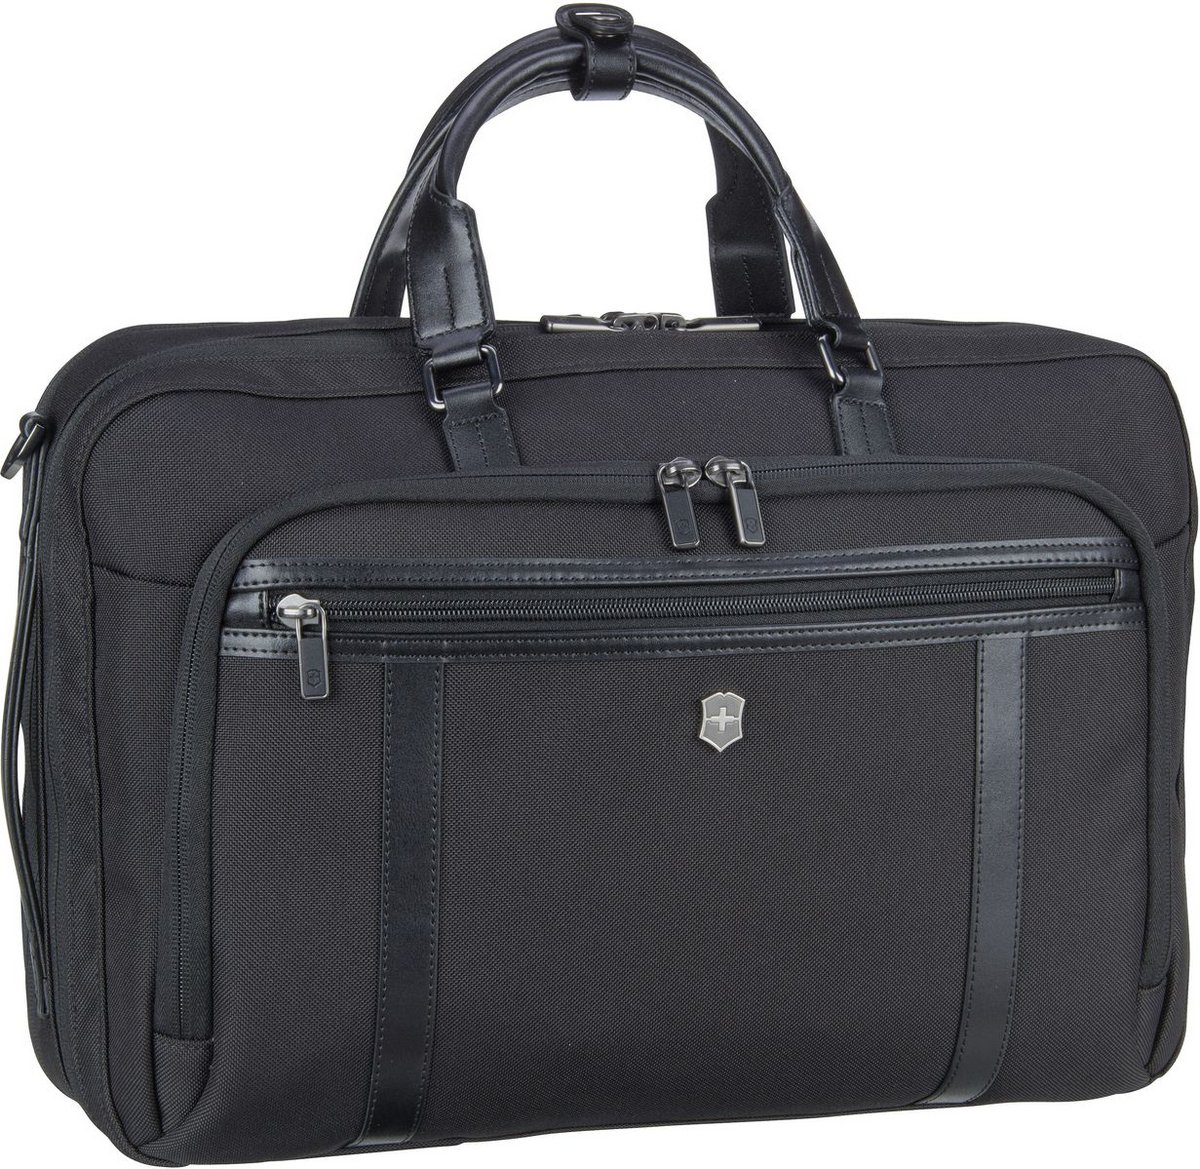 Victorinox Aktentasche Werks Professional Cordura 2 Way Carry Laptop Bag Black (21 Liter)  - Onlineshop Taschenkaufhaus